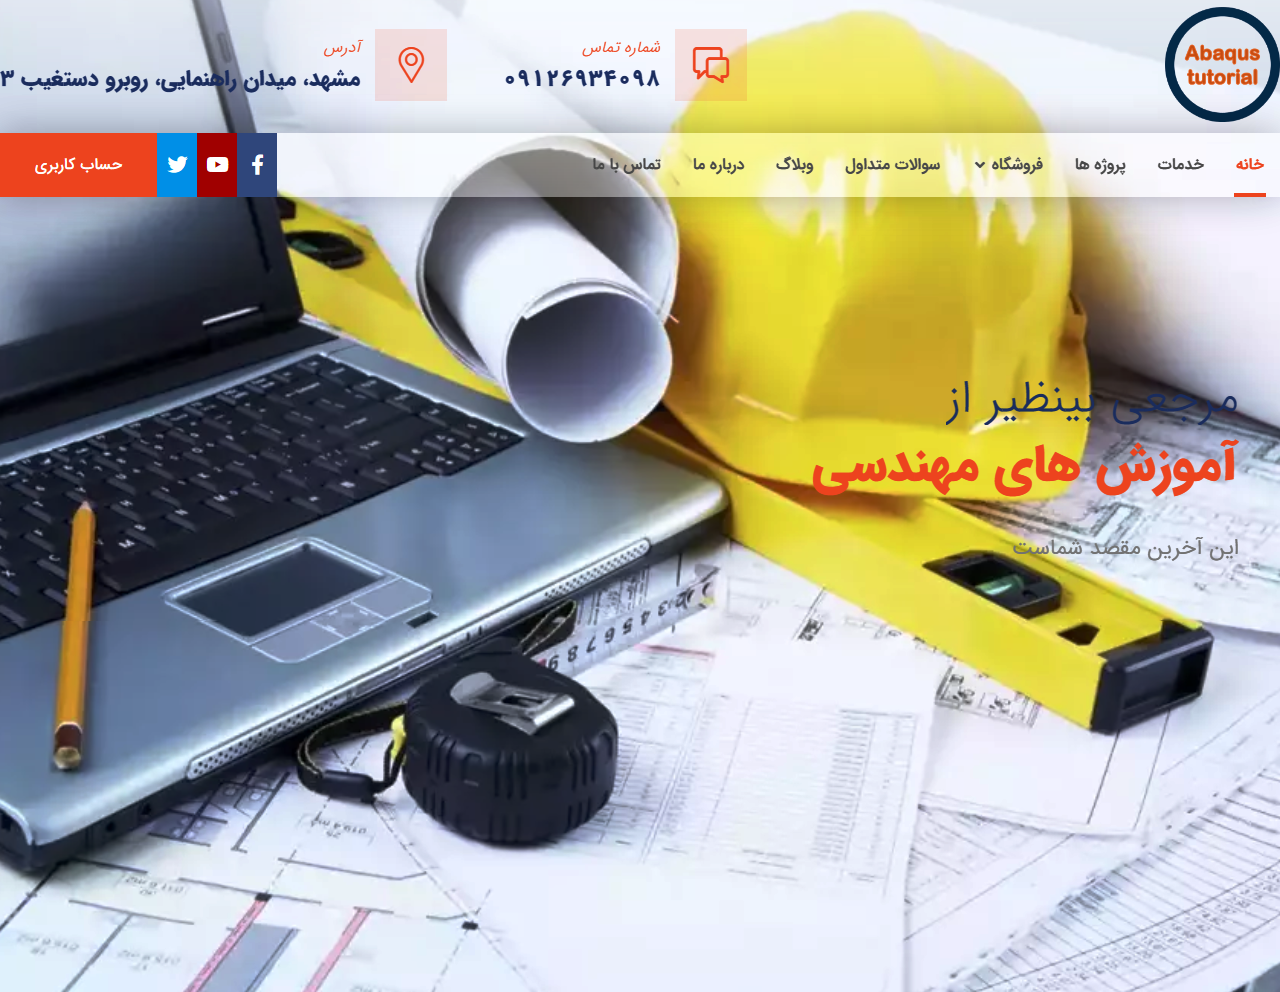 طراحی سایت آموزش نرم افزارهای مکانیک abaqustutorial